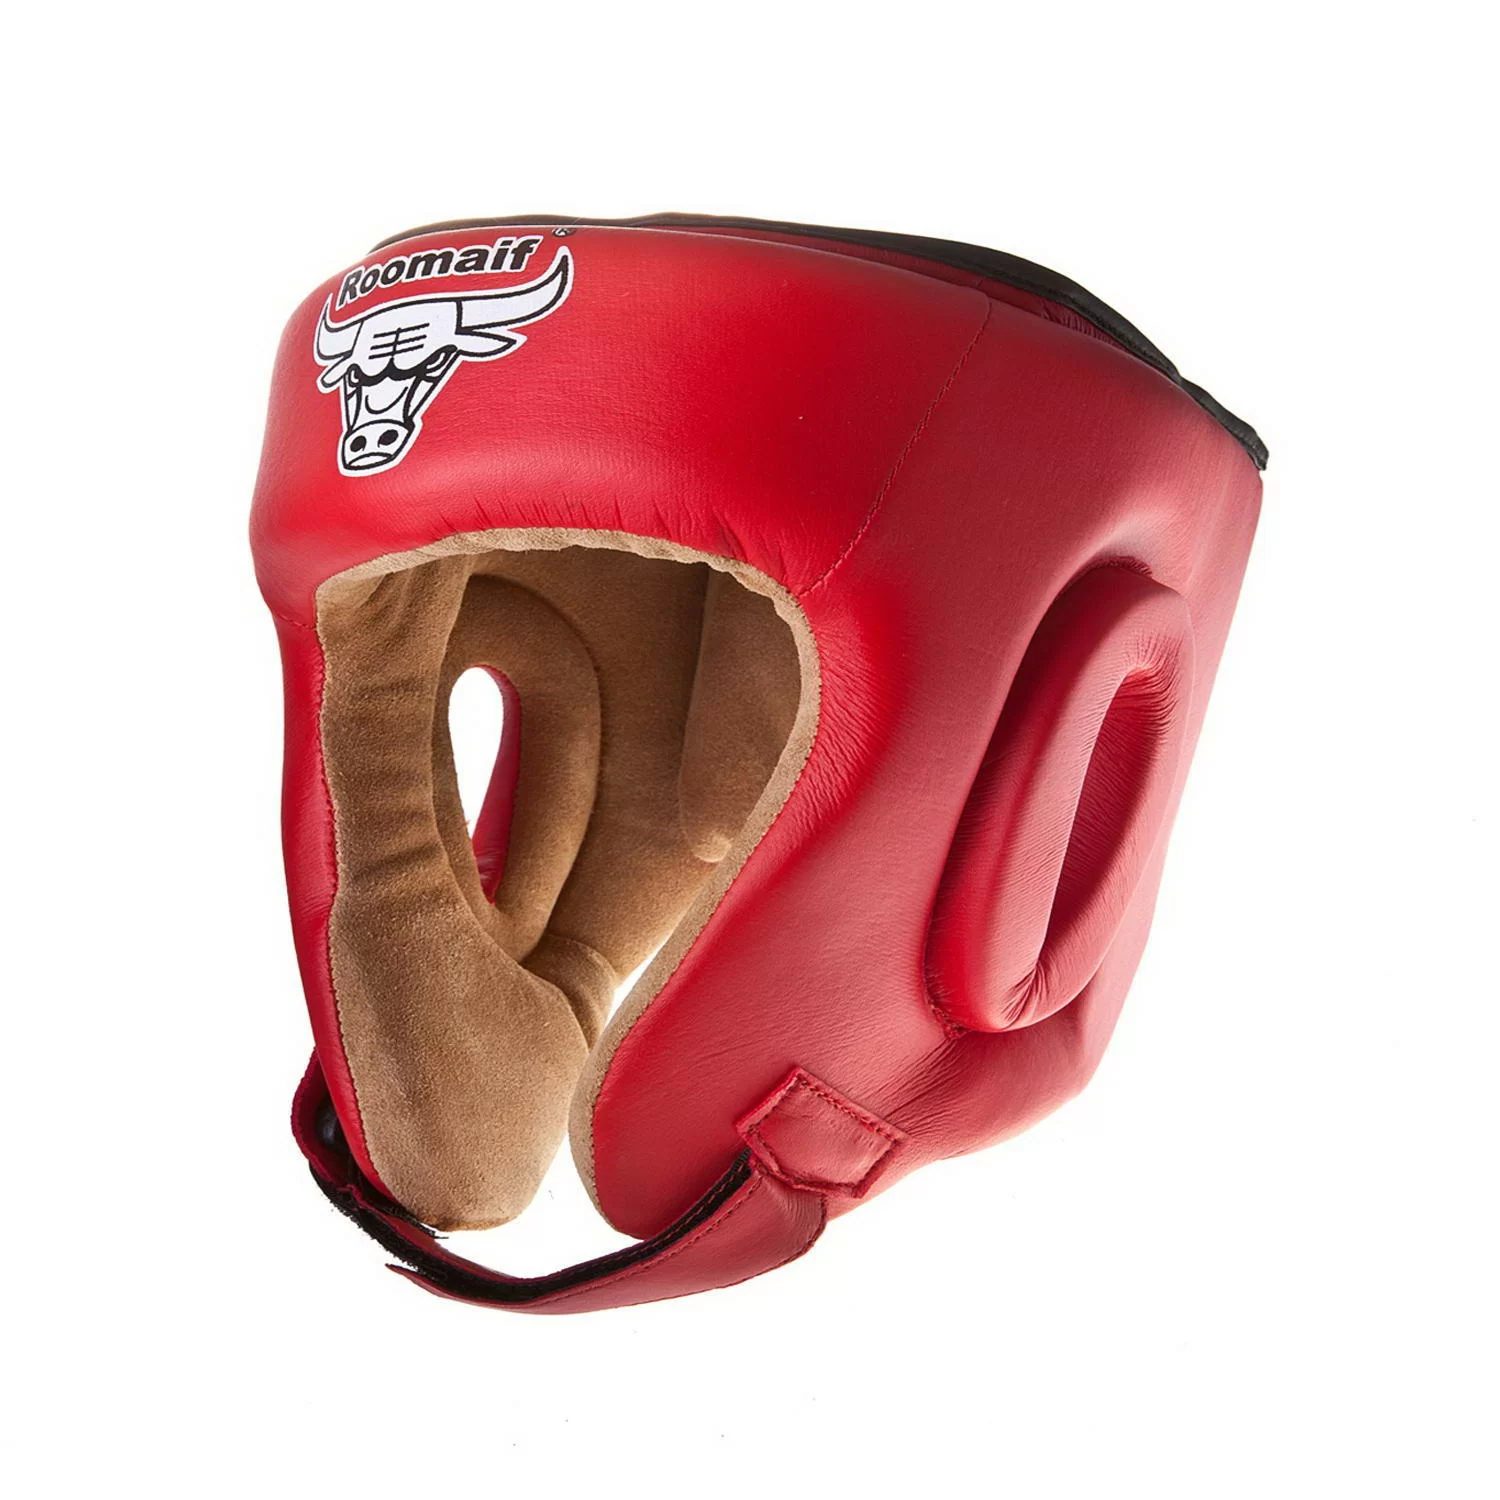 Реальное фото Шлем боксерский Roomaif RHG-146 PL защитный красный от магазина СпортСЕ